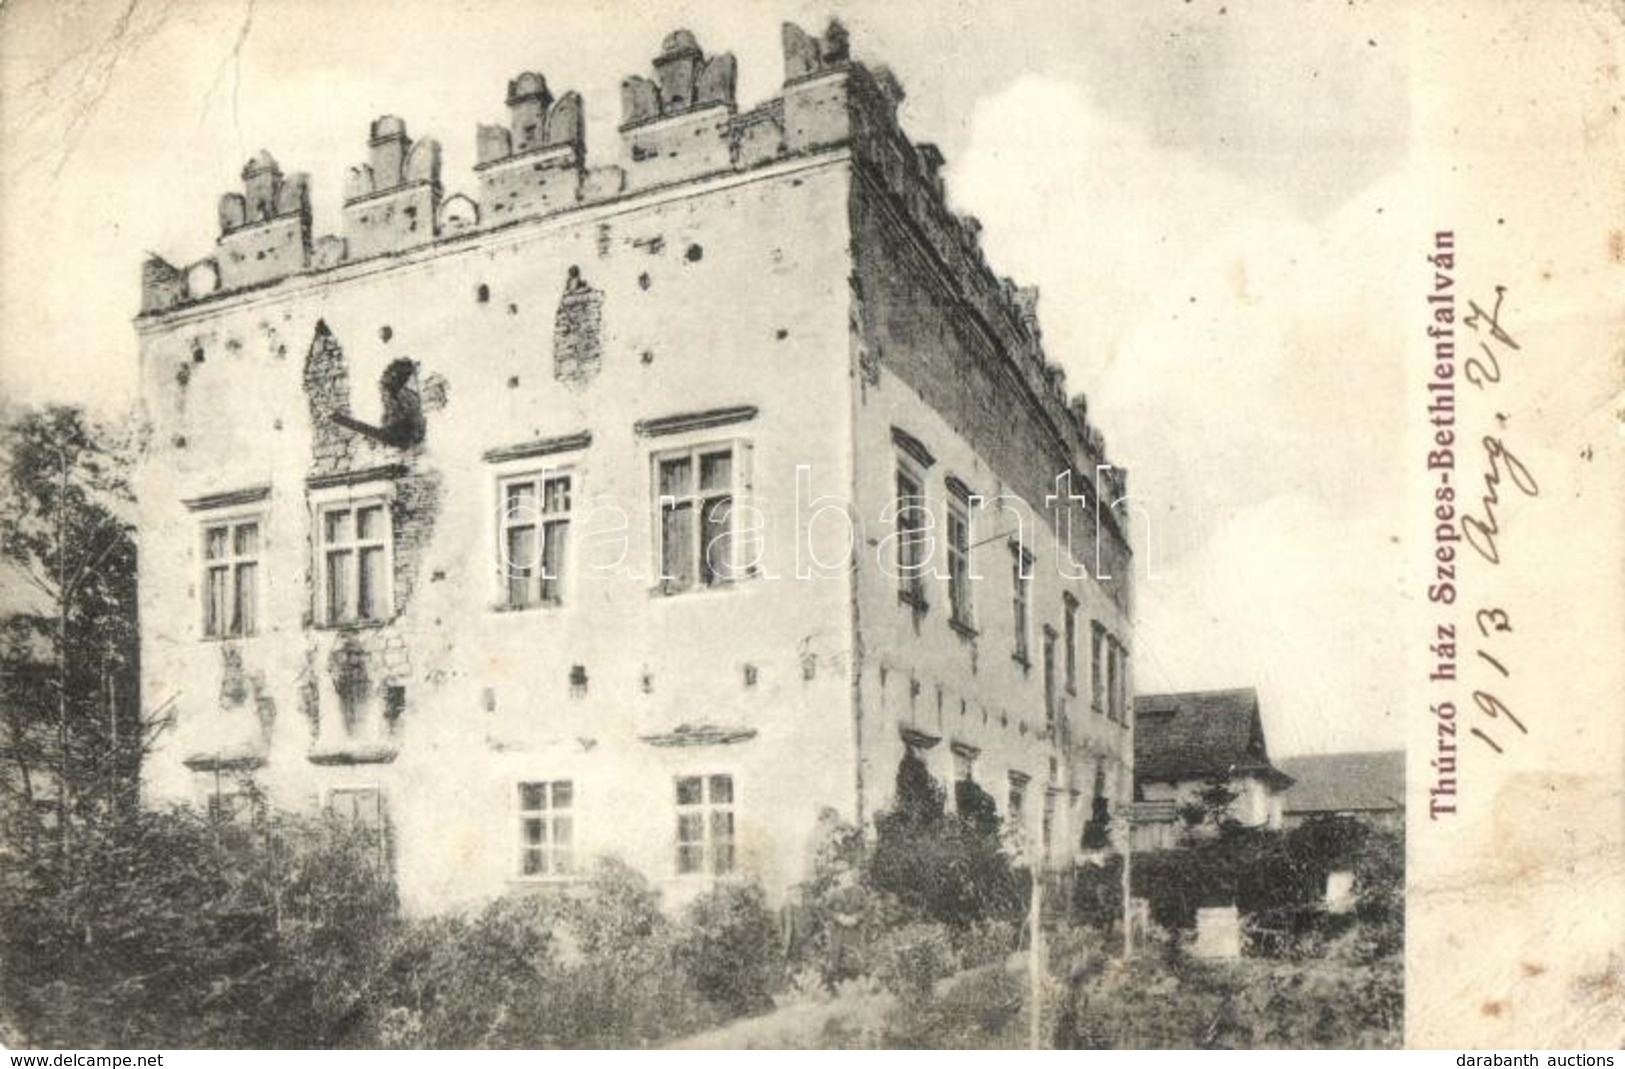 T3/T4 1913 Betlenfalva, Szepes-Bethlenfalva, Betlensdorf, Betlanovce; Thurzó Ház, Kastély / Castle (EB) - Unclassified